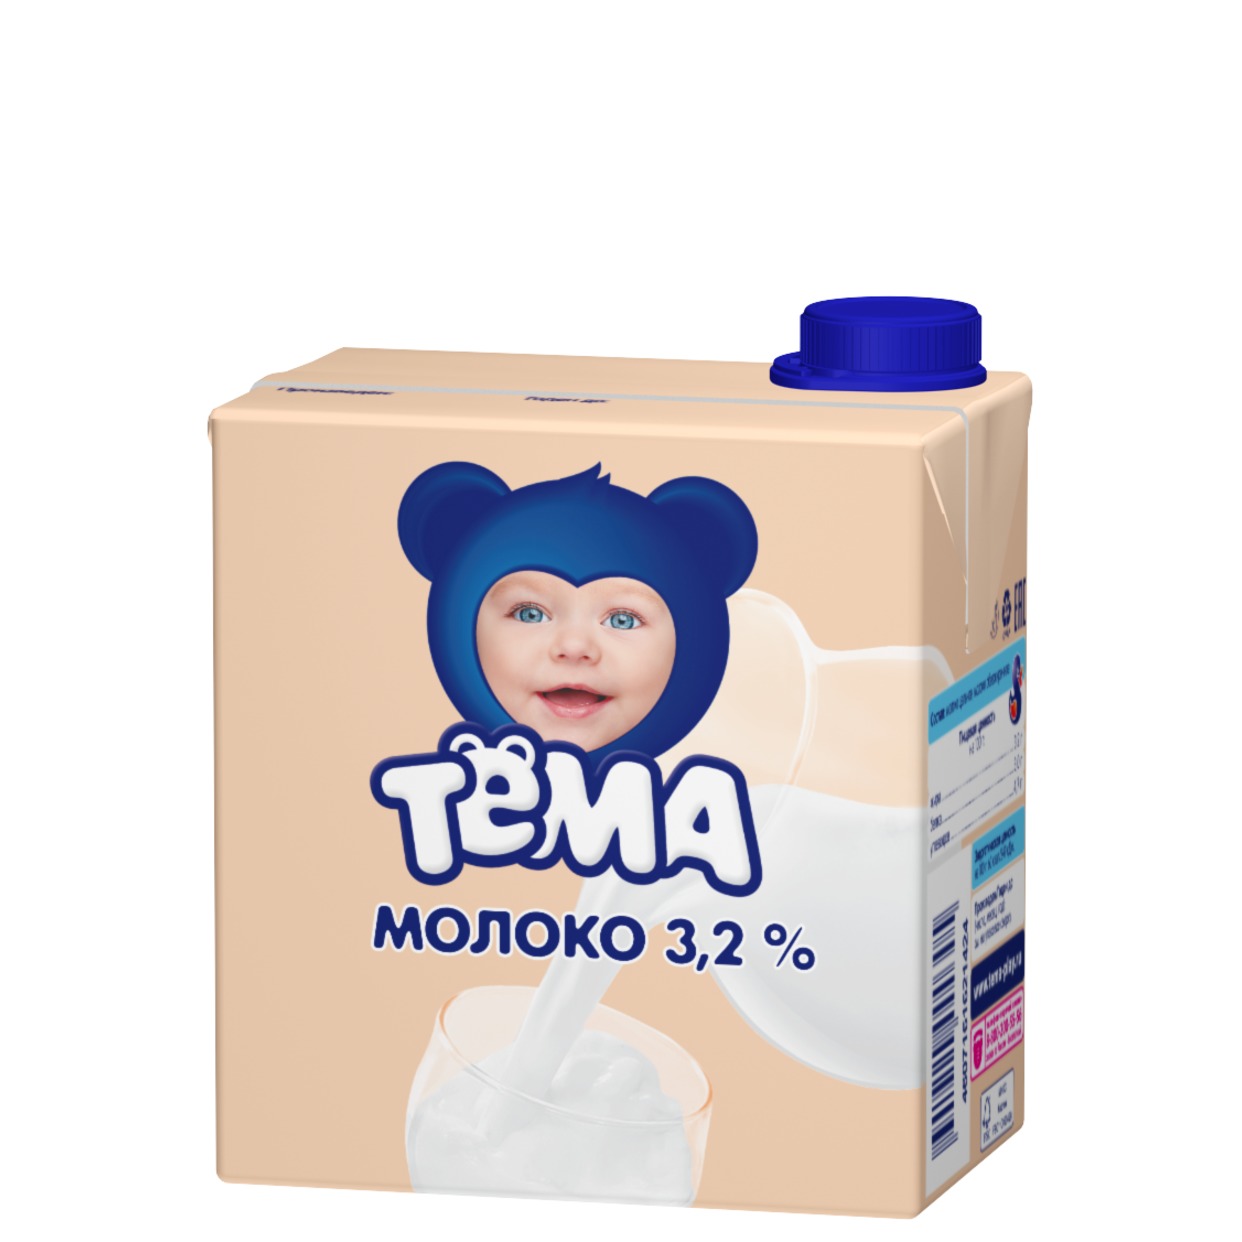 ТЕМА Молоко ул/паст детское 3,2% 500мл по акции в Пятерочке